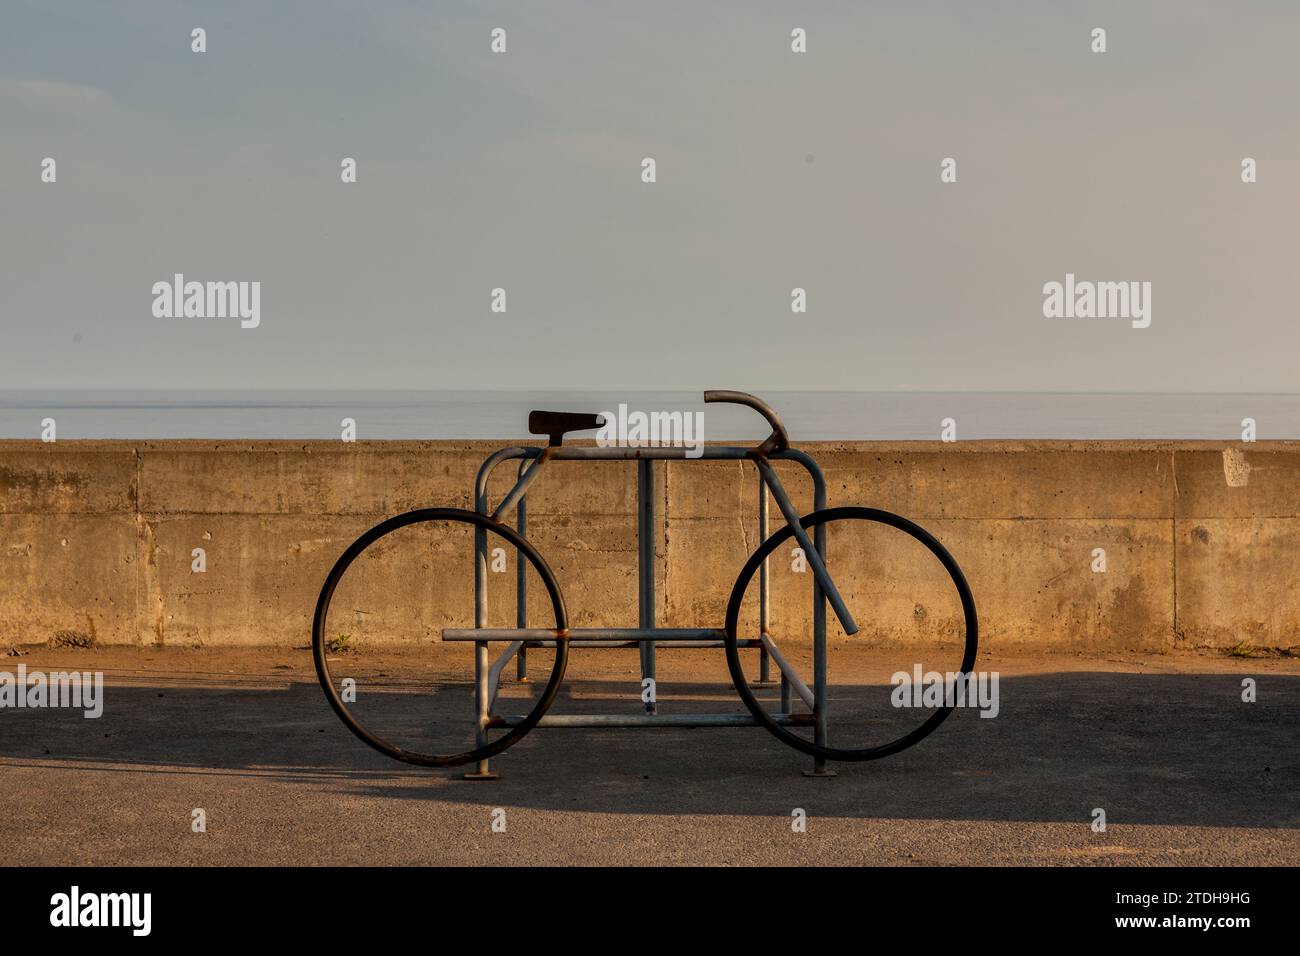 Proyecto portabultos y base de bicicleta vintage